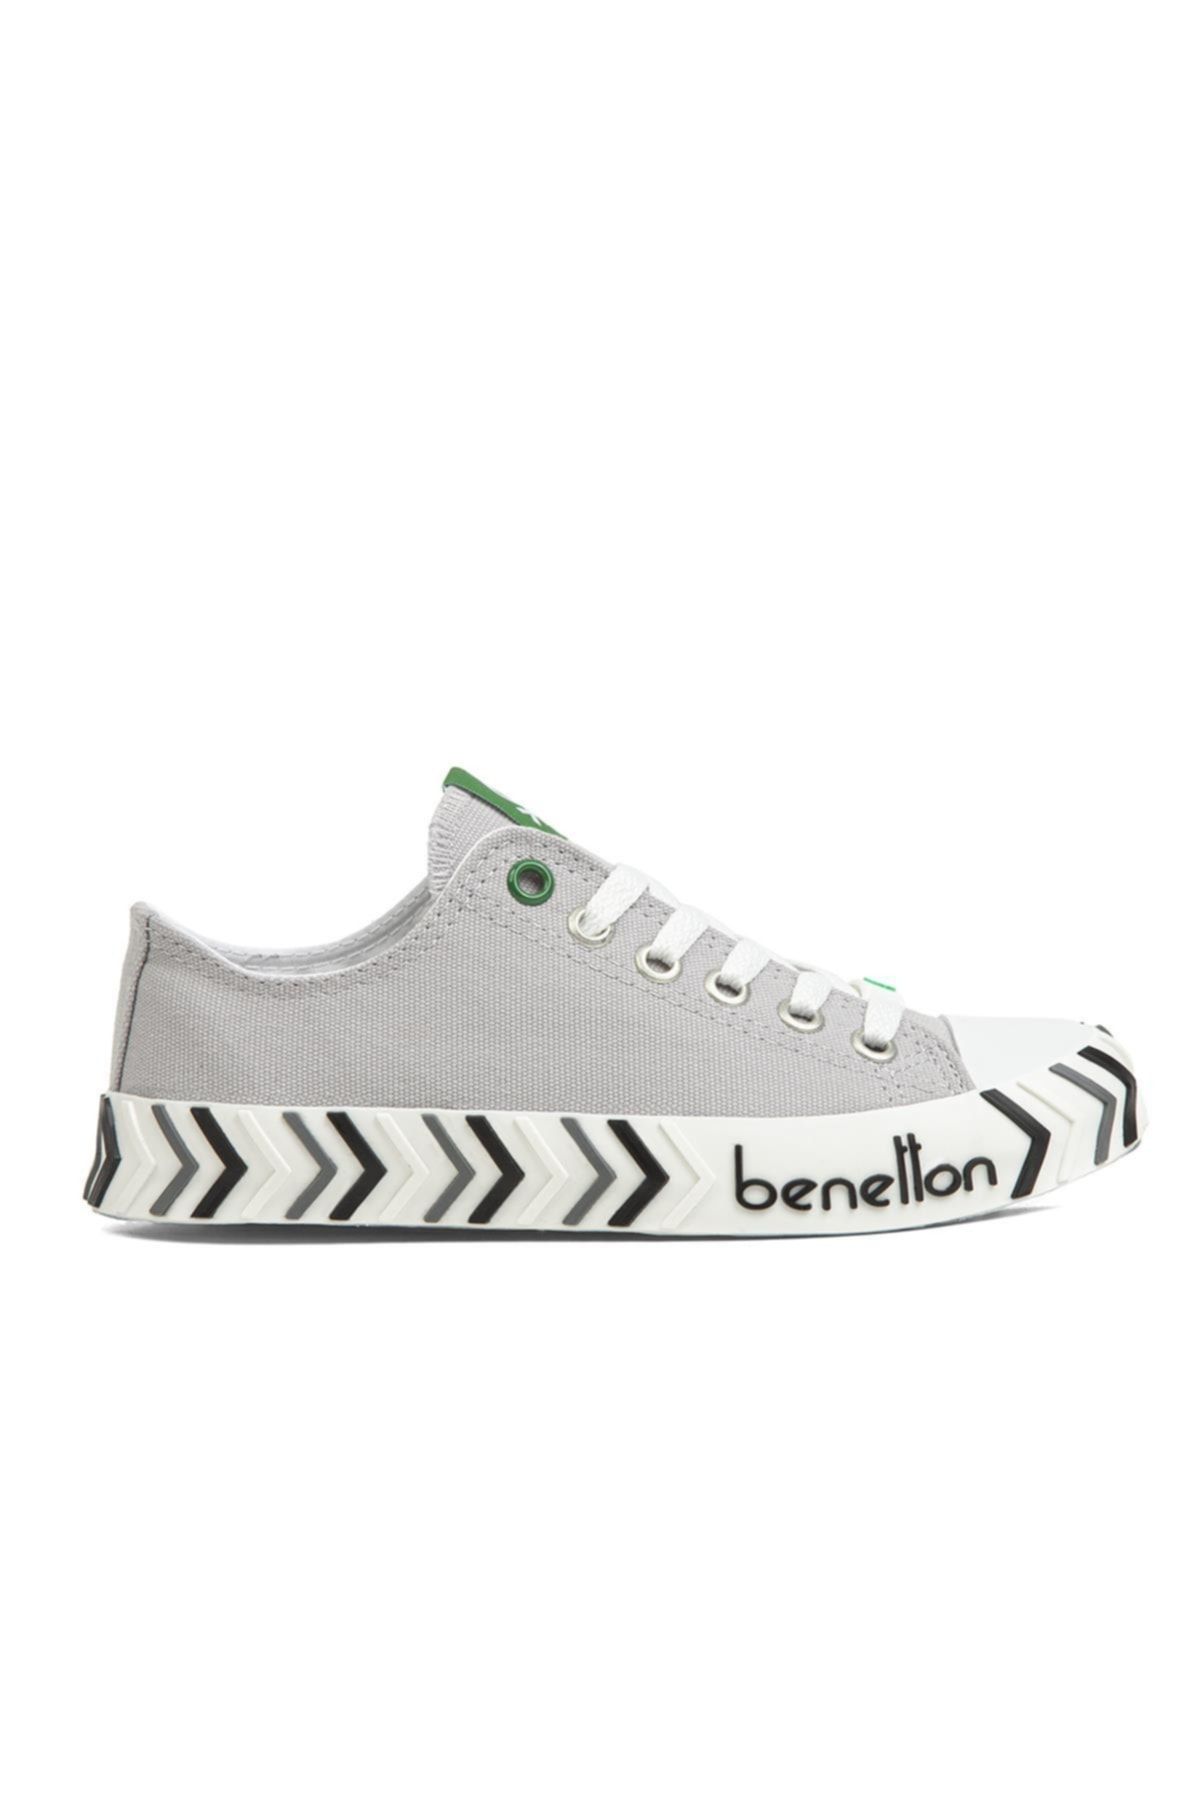 Benetton ® | Bn-30624-3374 Gri - Kadın Spor Ayakkabı